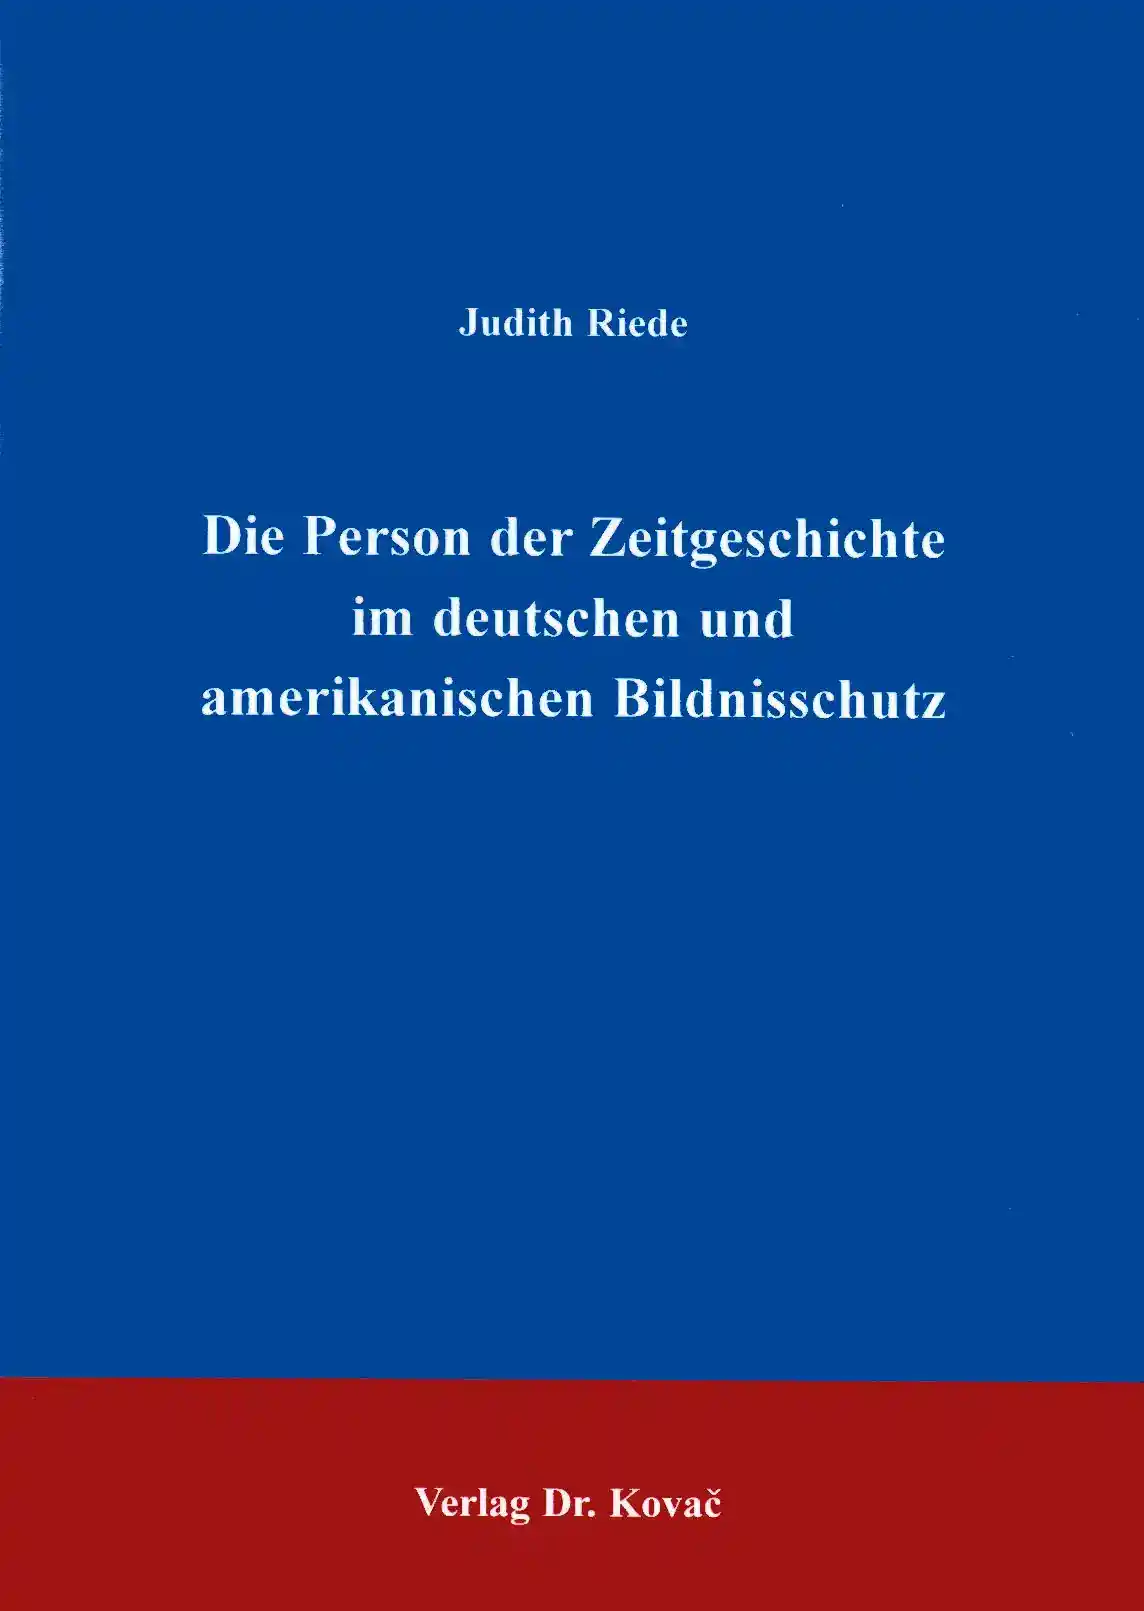 Cover: Der Bildnisschutz in Deutschland und den USA unter spezieller Berücksichtigung der Person der Zeitgeschichte bzw. der public figure